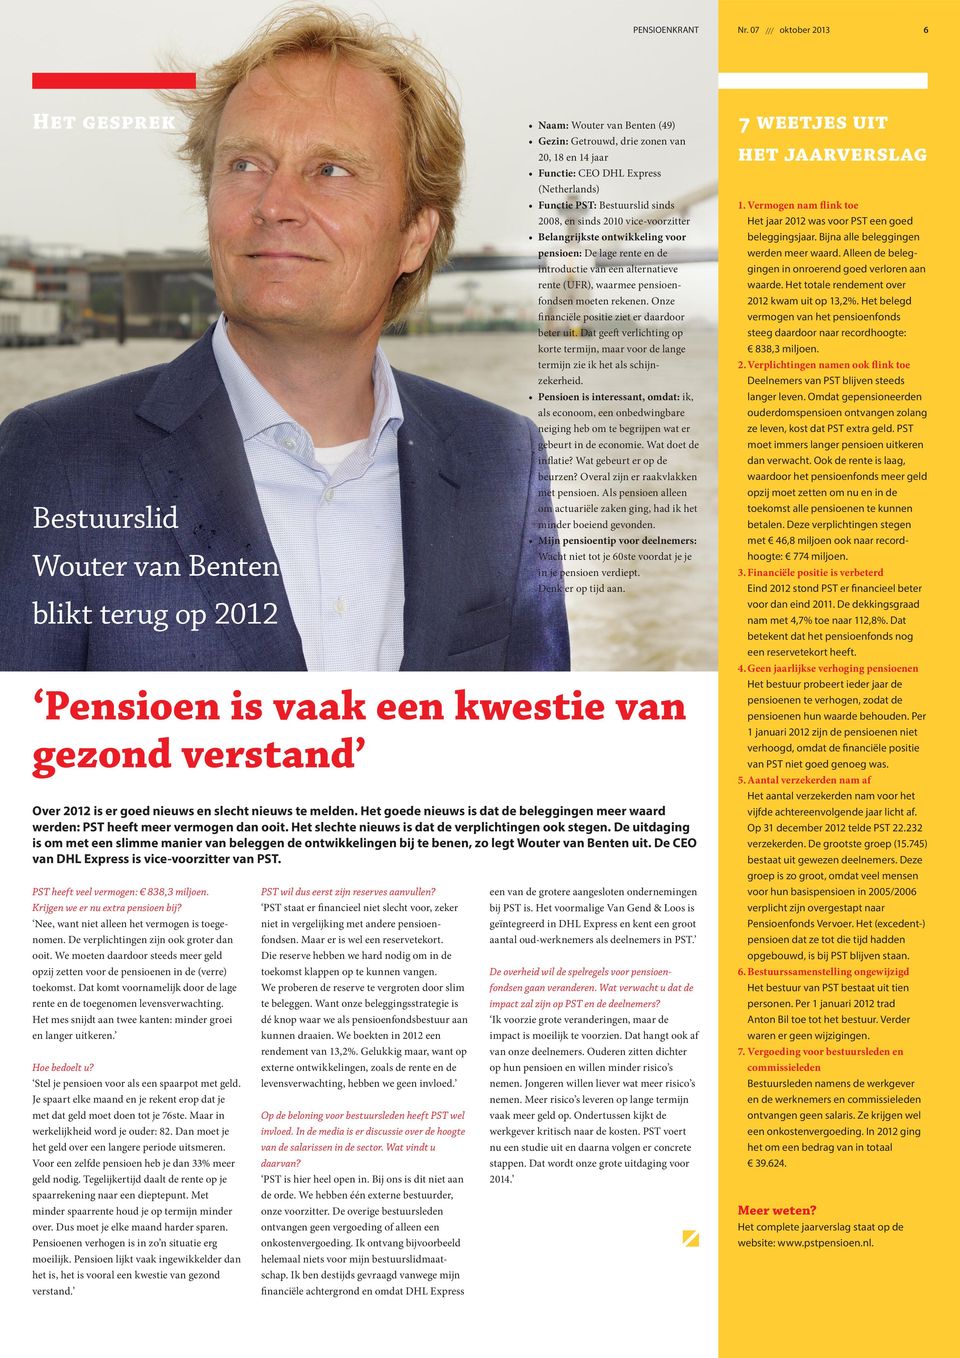 (Netherlands) Functie PST: Bestuurslid sinds 2008, en sinds 2010 vice-voorzitter Belangrijkste ontwikkeling voor pensioen: De lage rente en de introductie van een alternatieve rente (UFR), waarmee